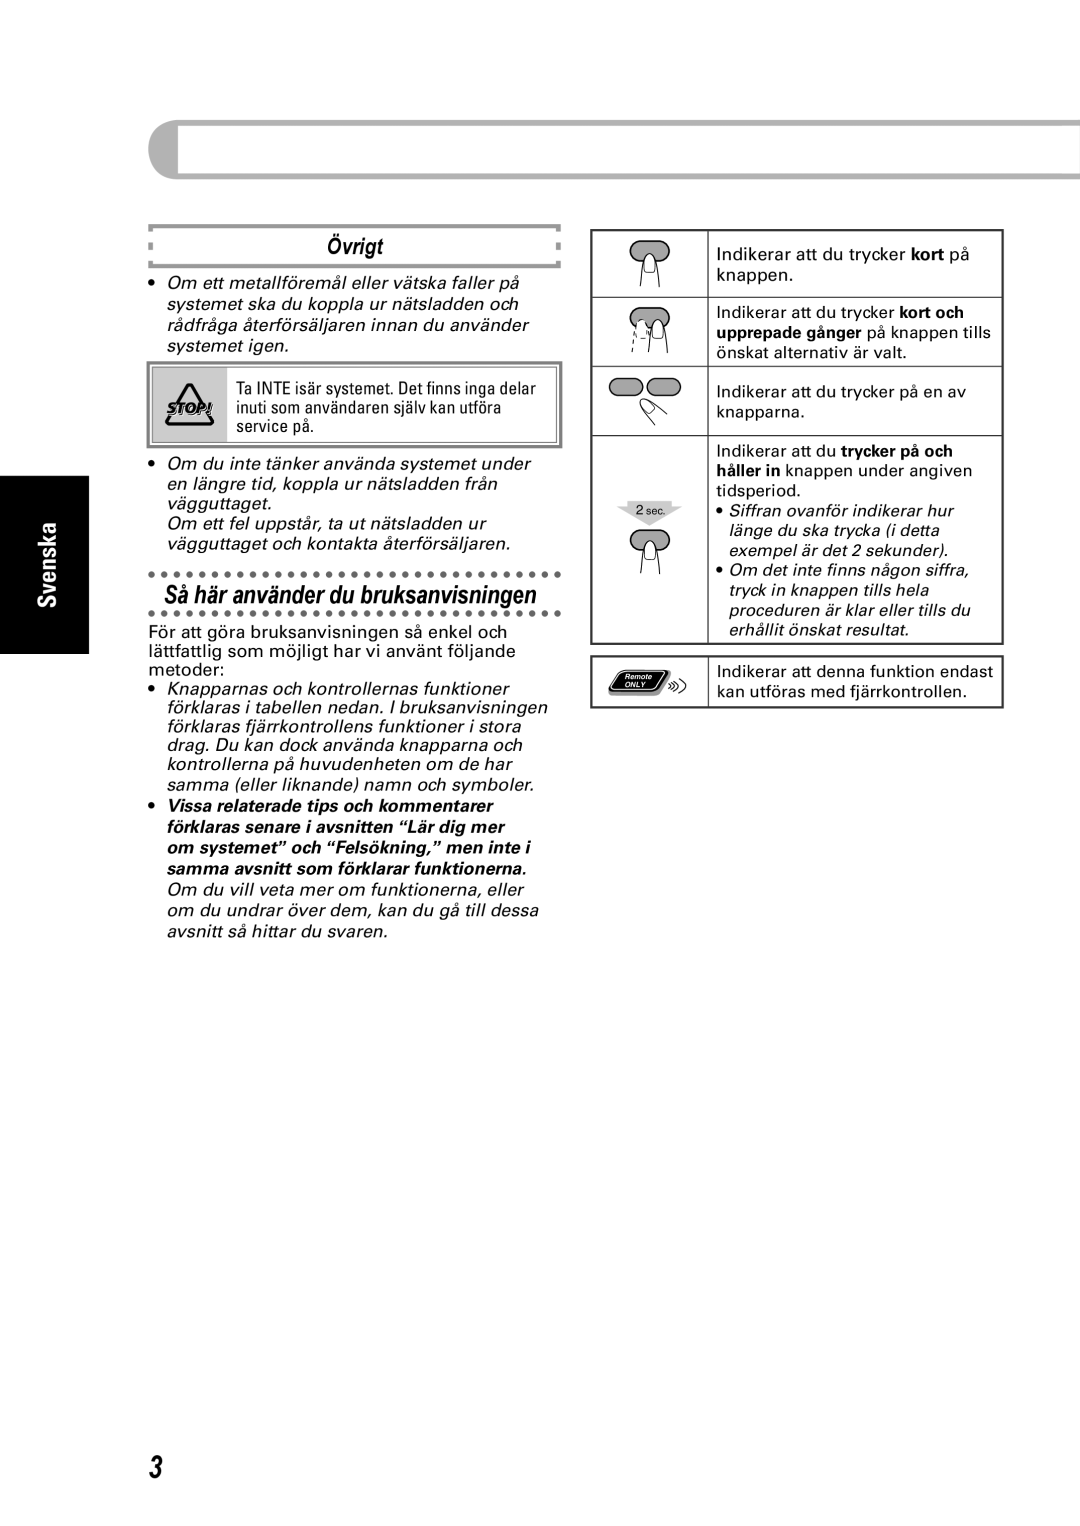 JVC CA-UXEP25, SP-UXEP25 manual Så här använder du bruksanvisningen, Övrigt, upprepade gånger på knappen tills, Svenska 